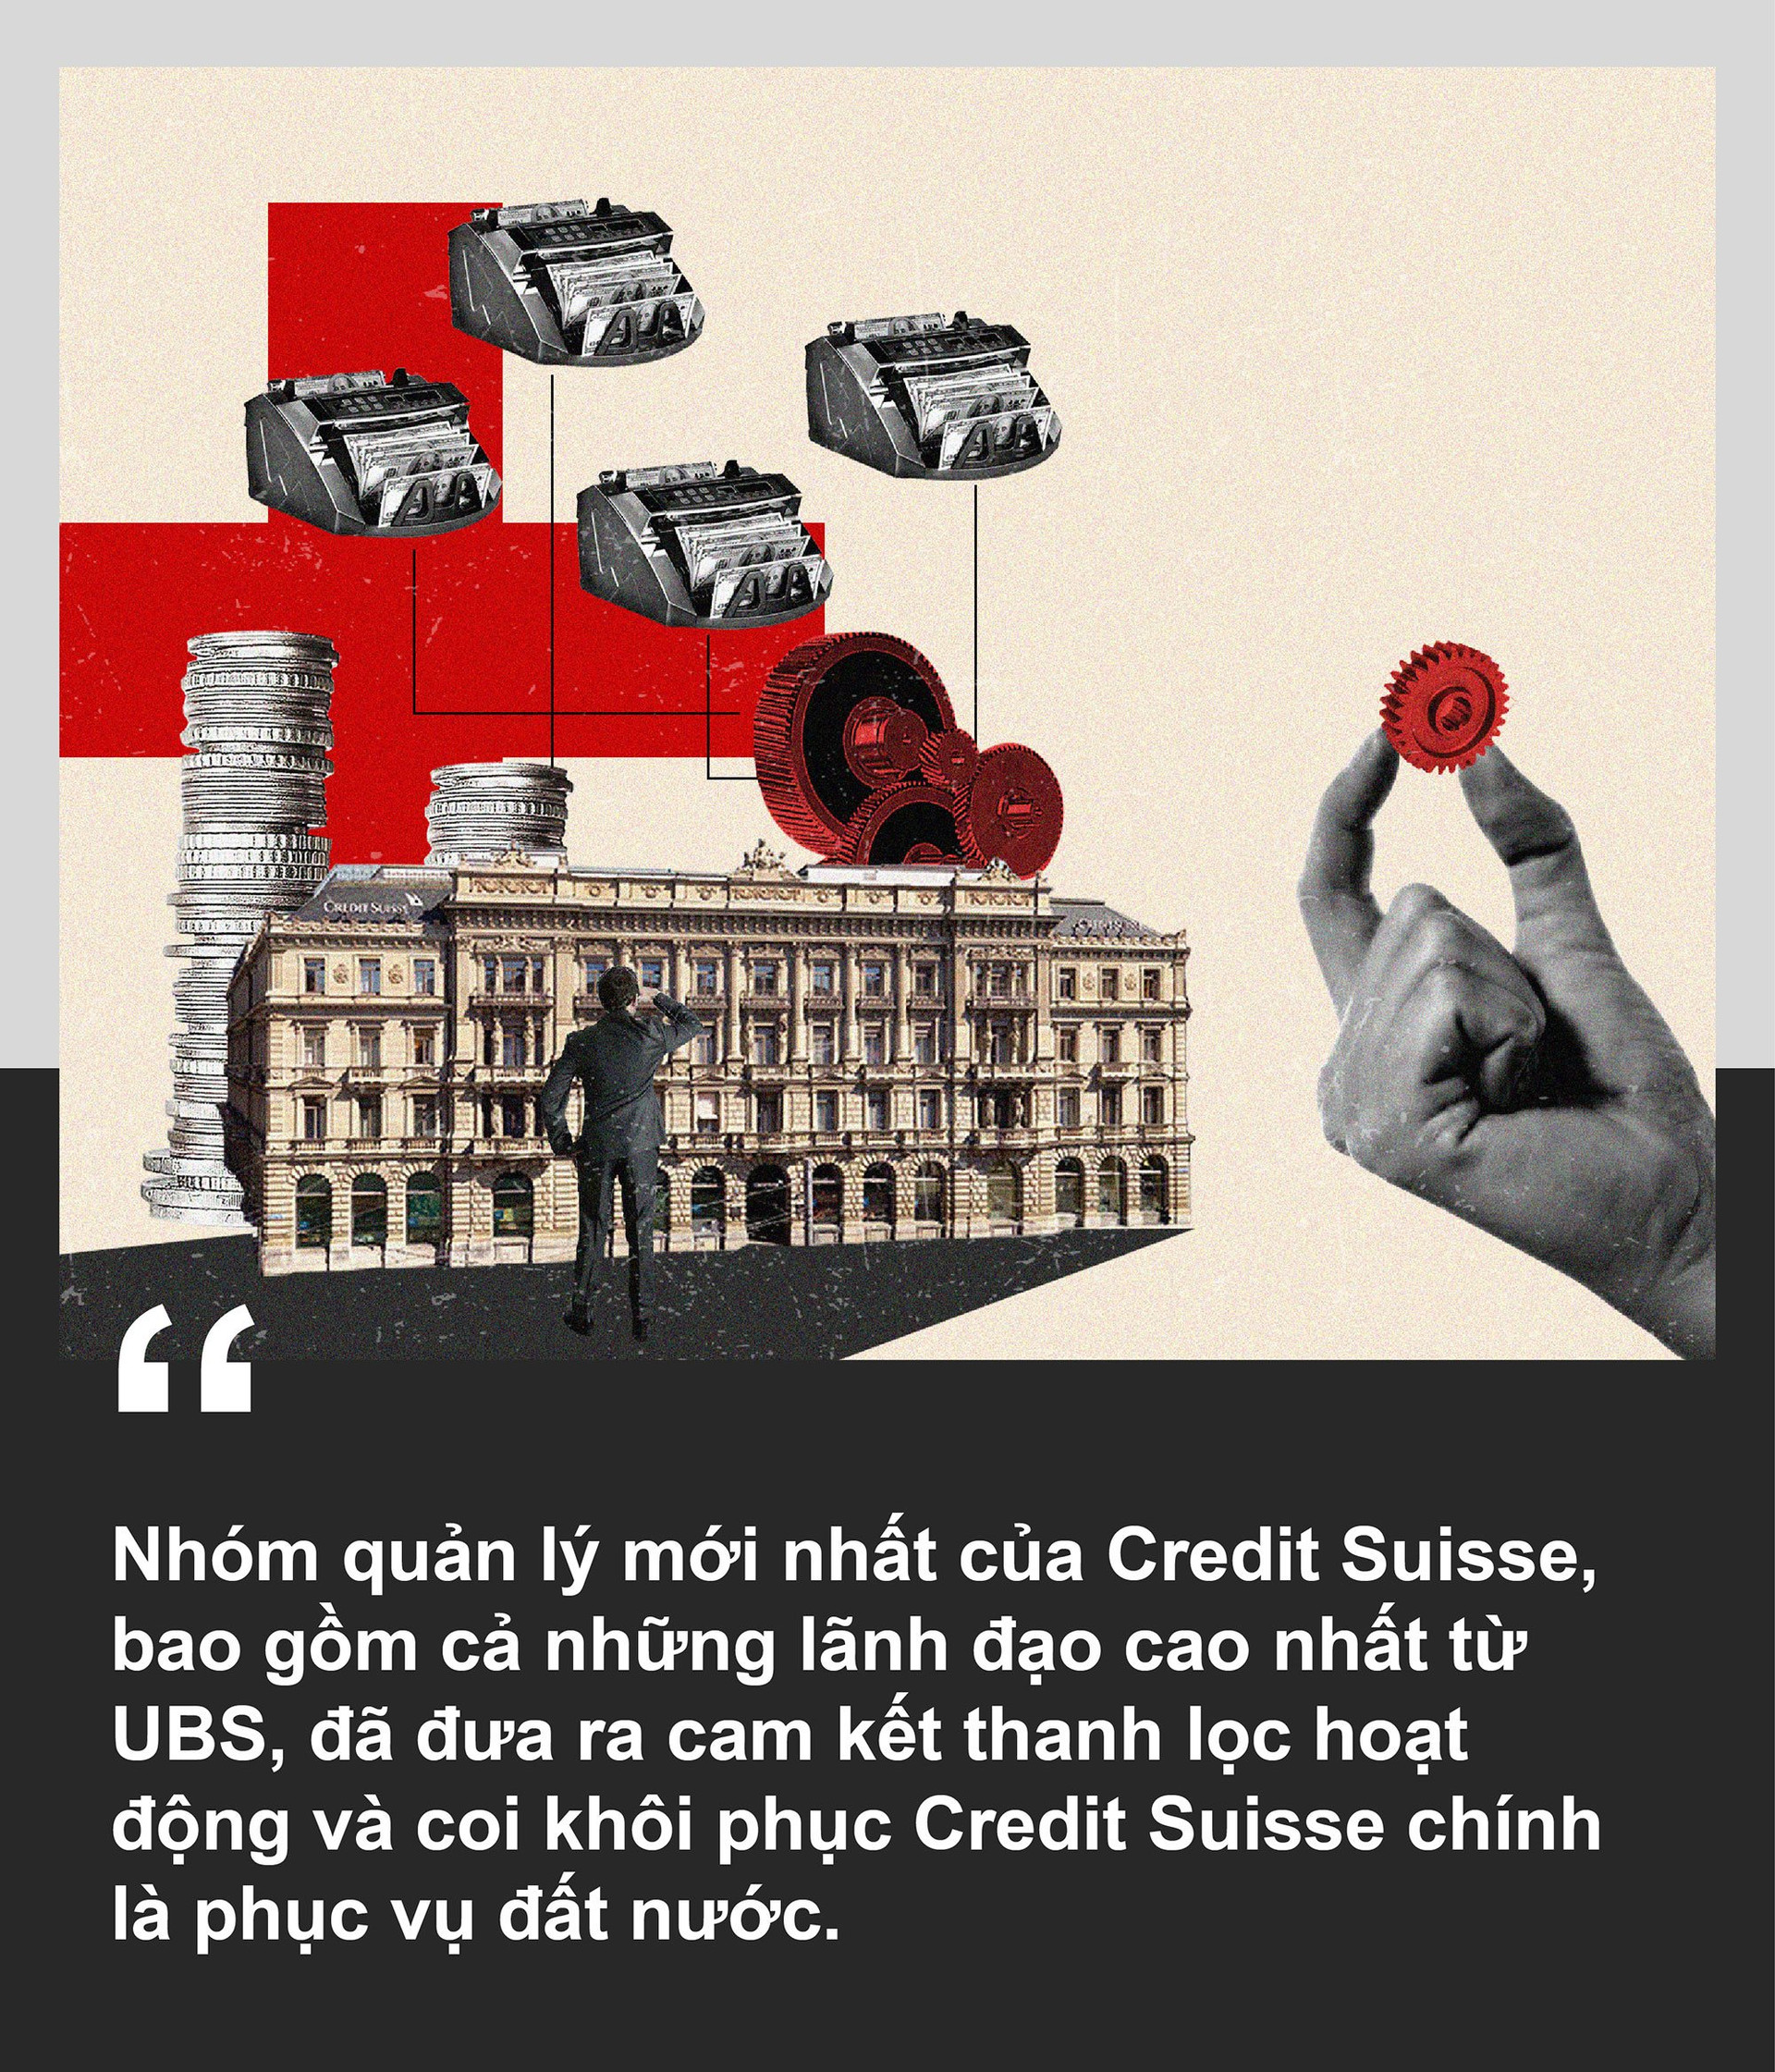 Khủng hoảng với Credit Suisse hé lộ những vấn đề với mô hình kinh tế “bảo vệ tài sản giới siêu giàu” của Thụy Sĩ - Ảnh 5.